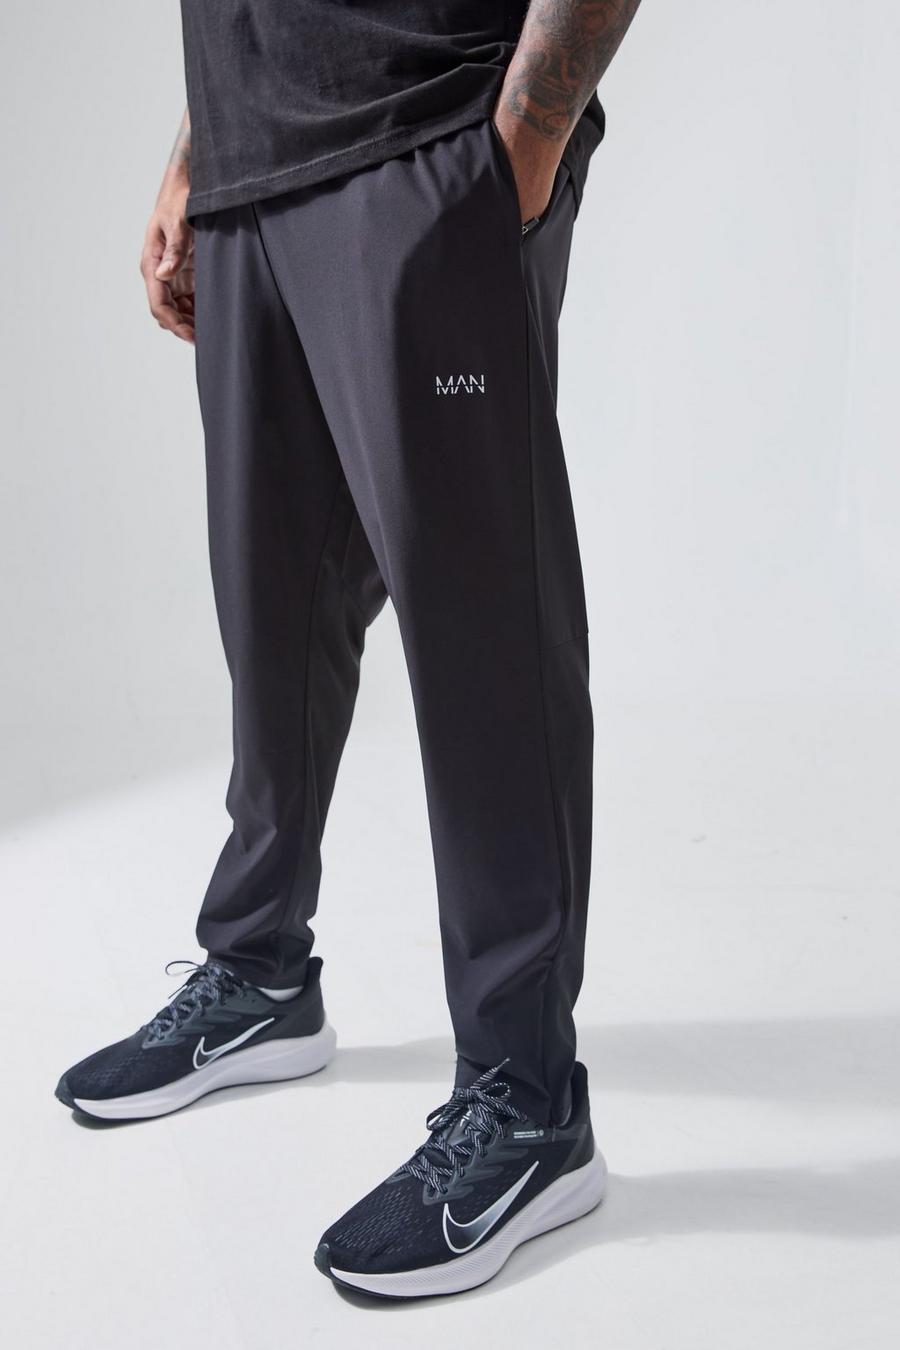 Black Plus Man Active Gym Performance Sweatpant Zip Pockets